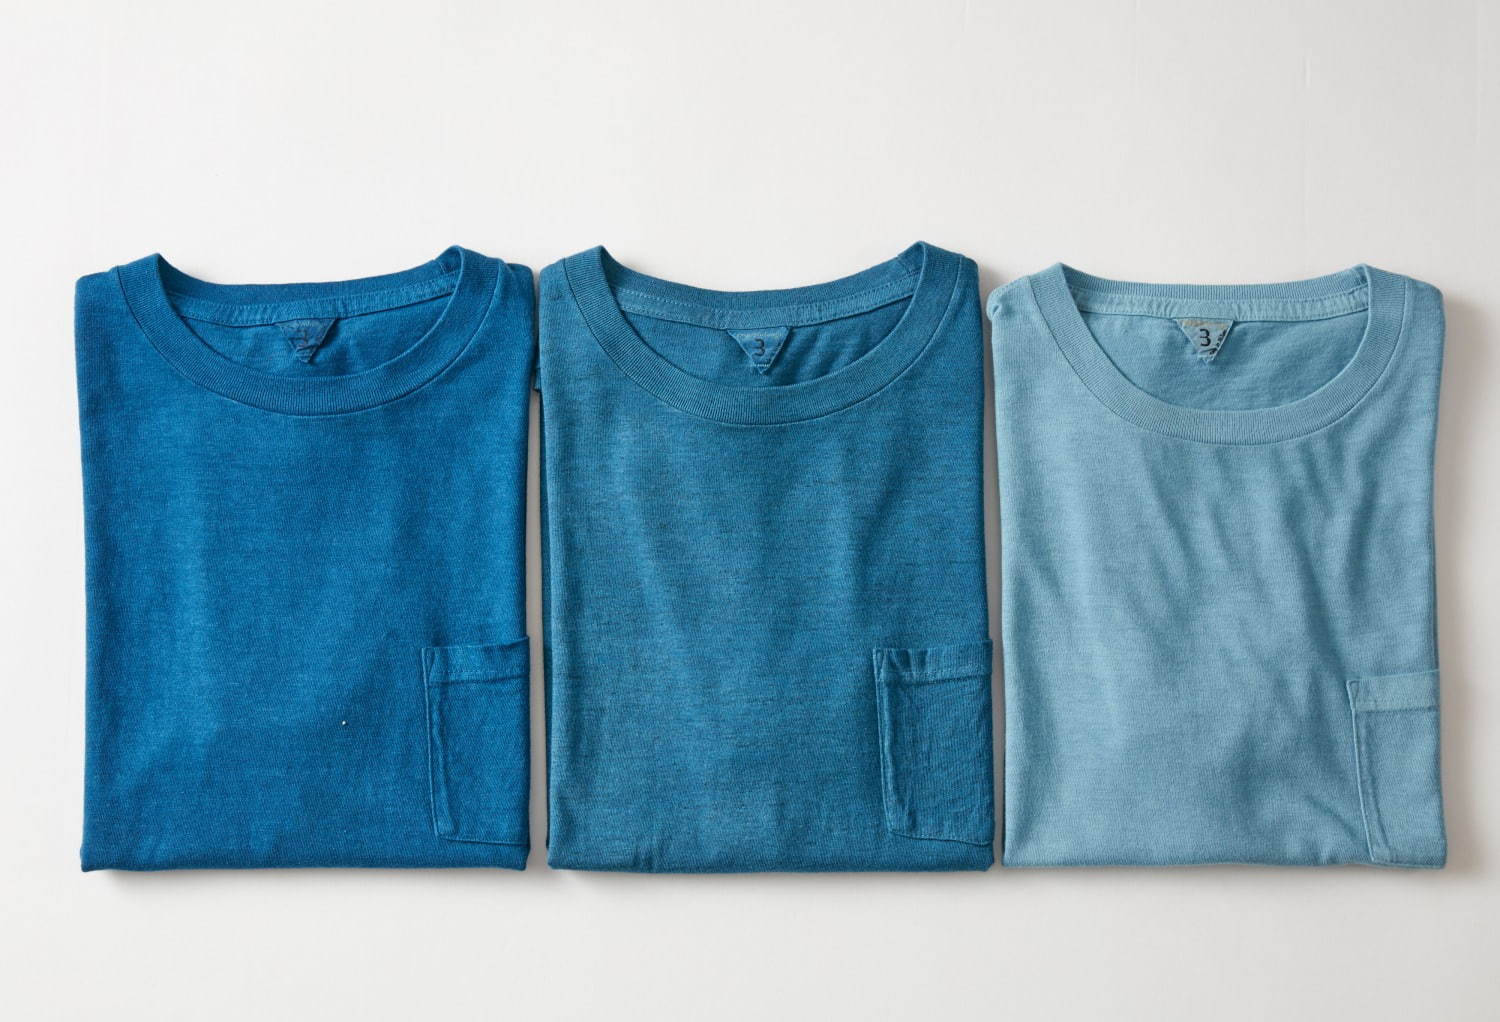 フィルメランジェ×藍染め職人集団リトマス、天然藍で染めたTシャツや